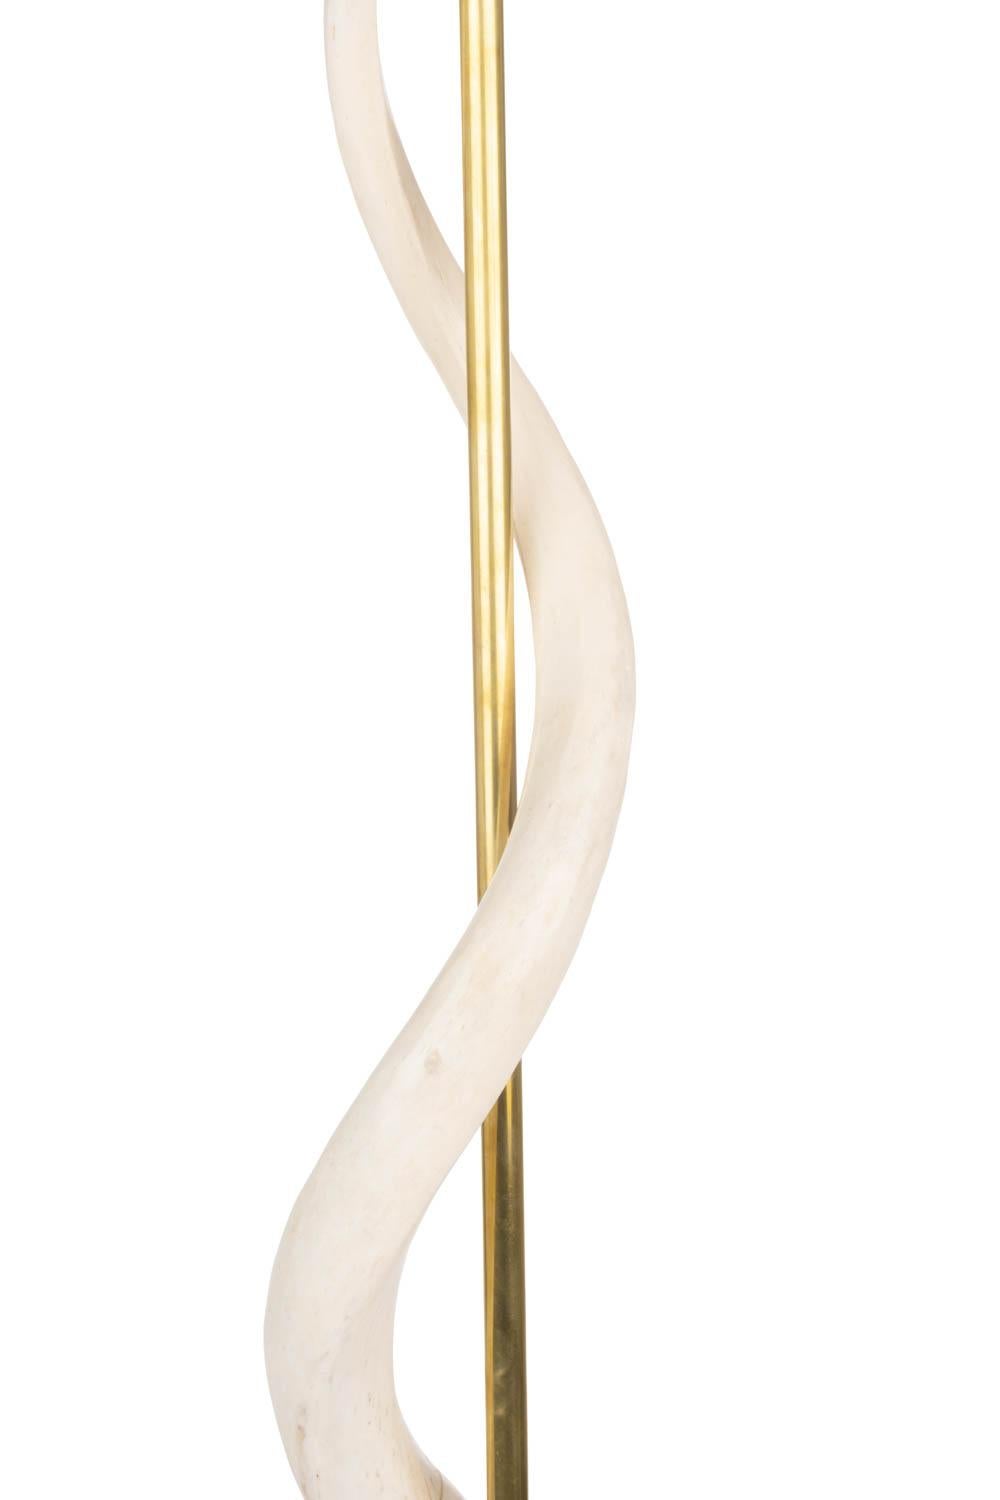 Fabriqué à la main en Afrique du Sud, ce lampadaire d'une élégance naturelle présente deux cornes inversées de koudou africain entourant une tige en laiton au-dessus d'une base ronde en bois, qui est enveloppée de peau de vache crème devore